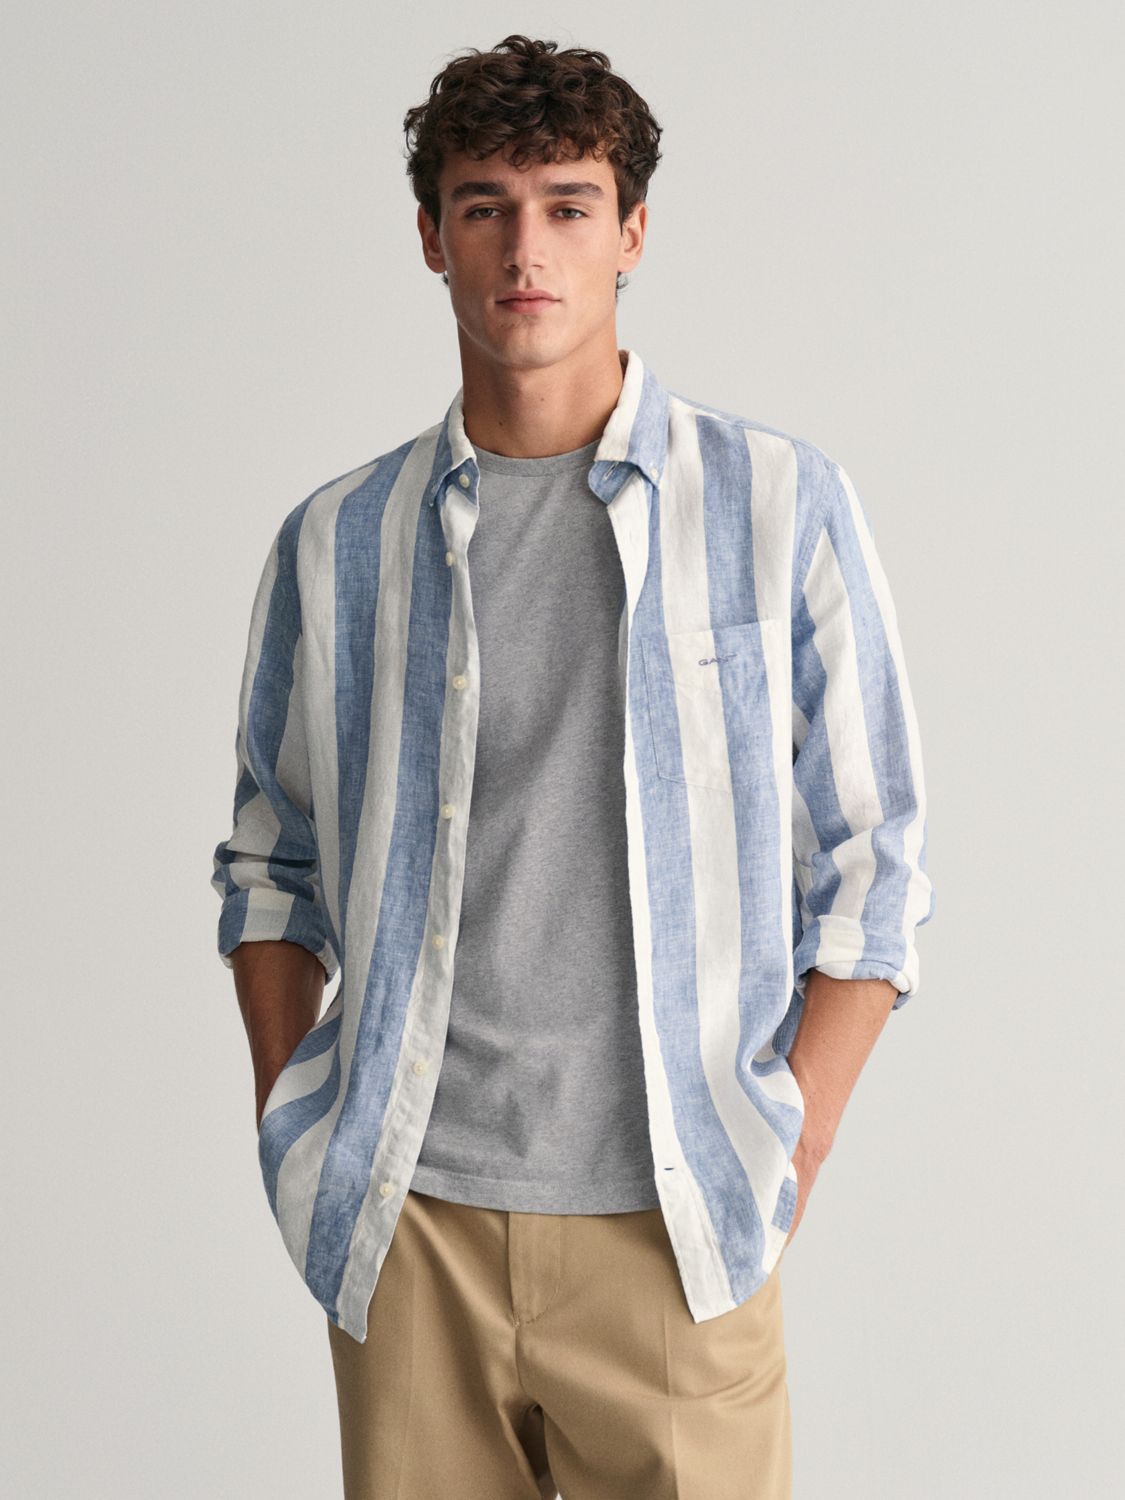 GANT Striped Linen Long Sleeve Shirt, Blue/White, S